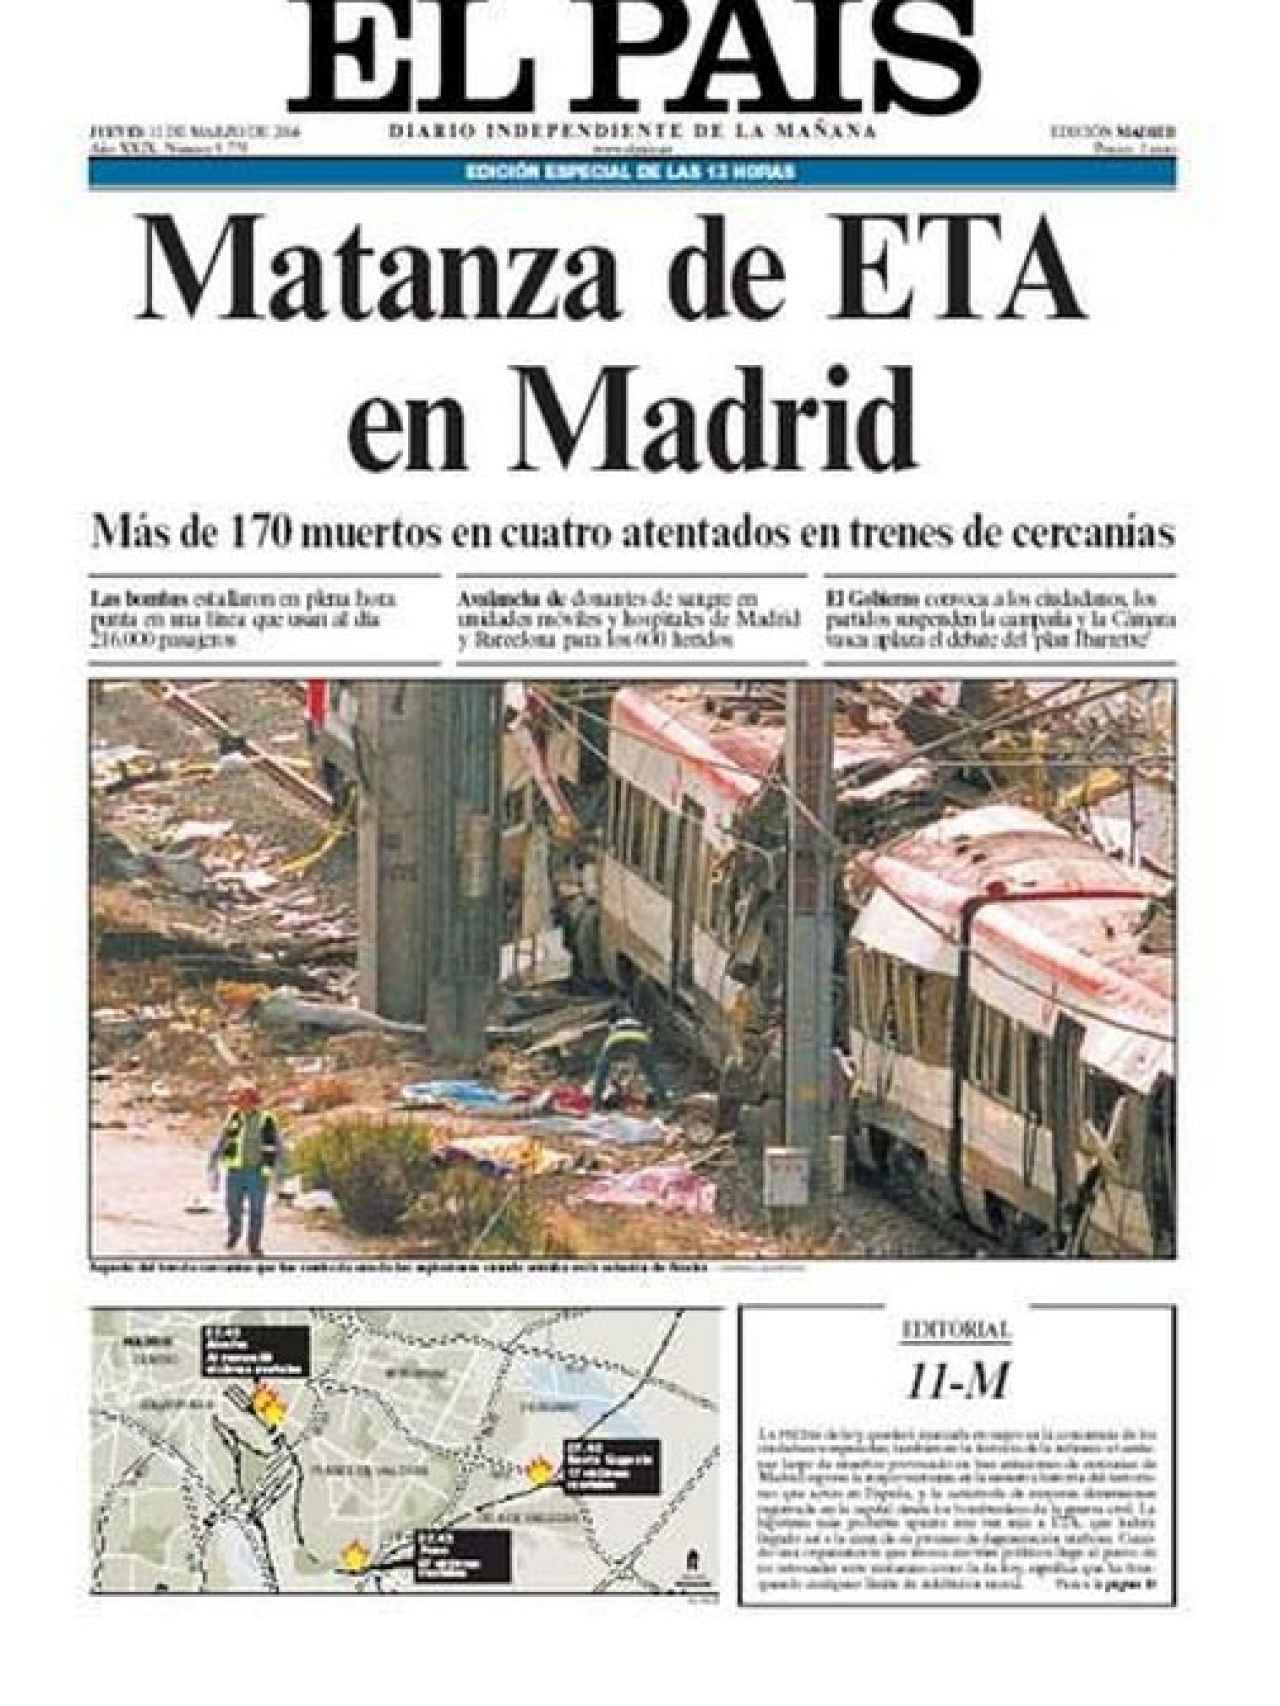 Portada publicada por El País aquel día.